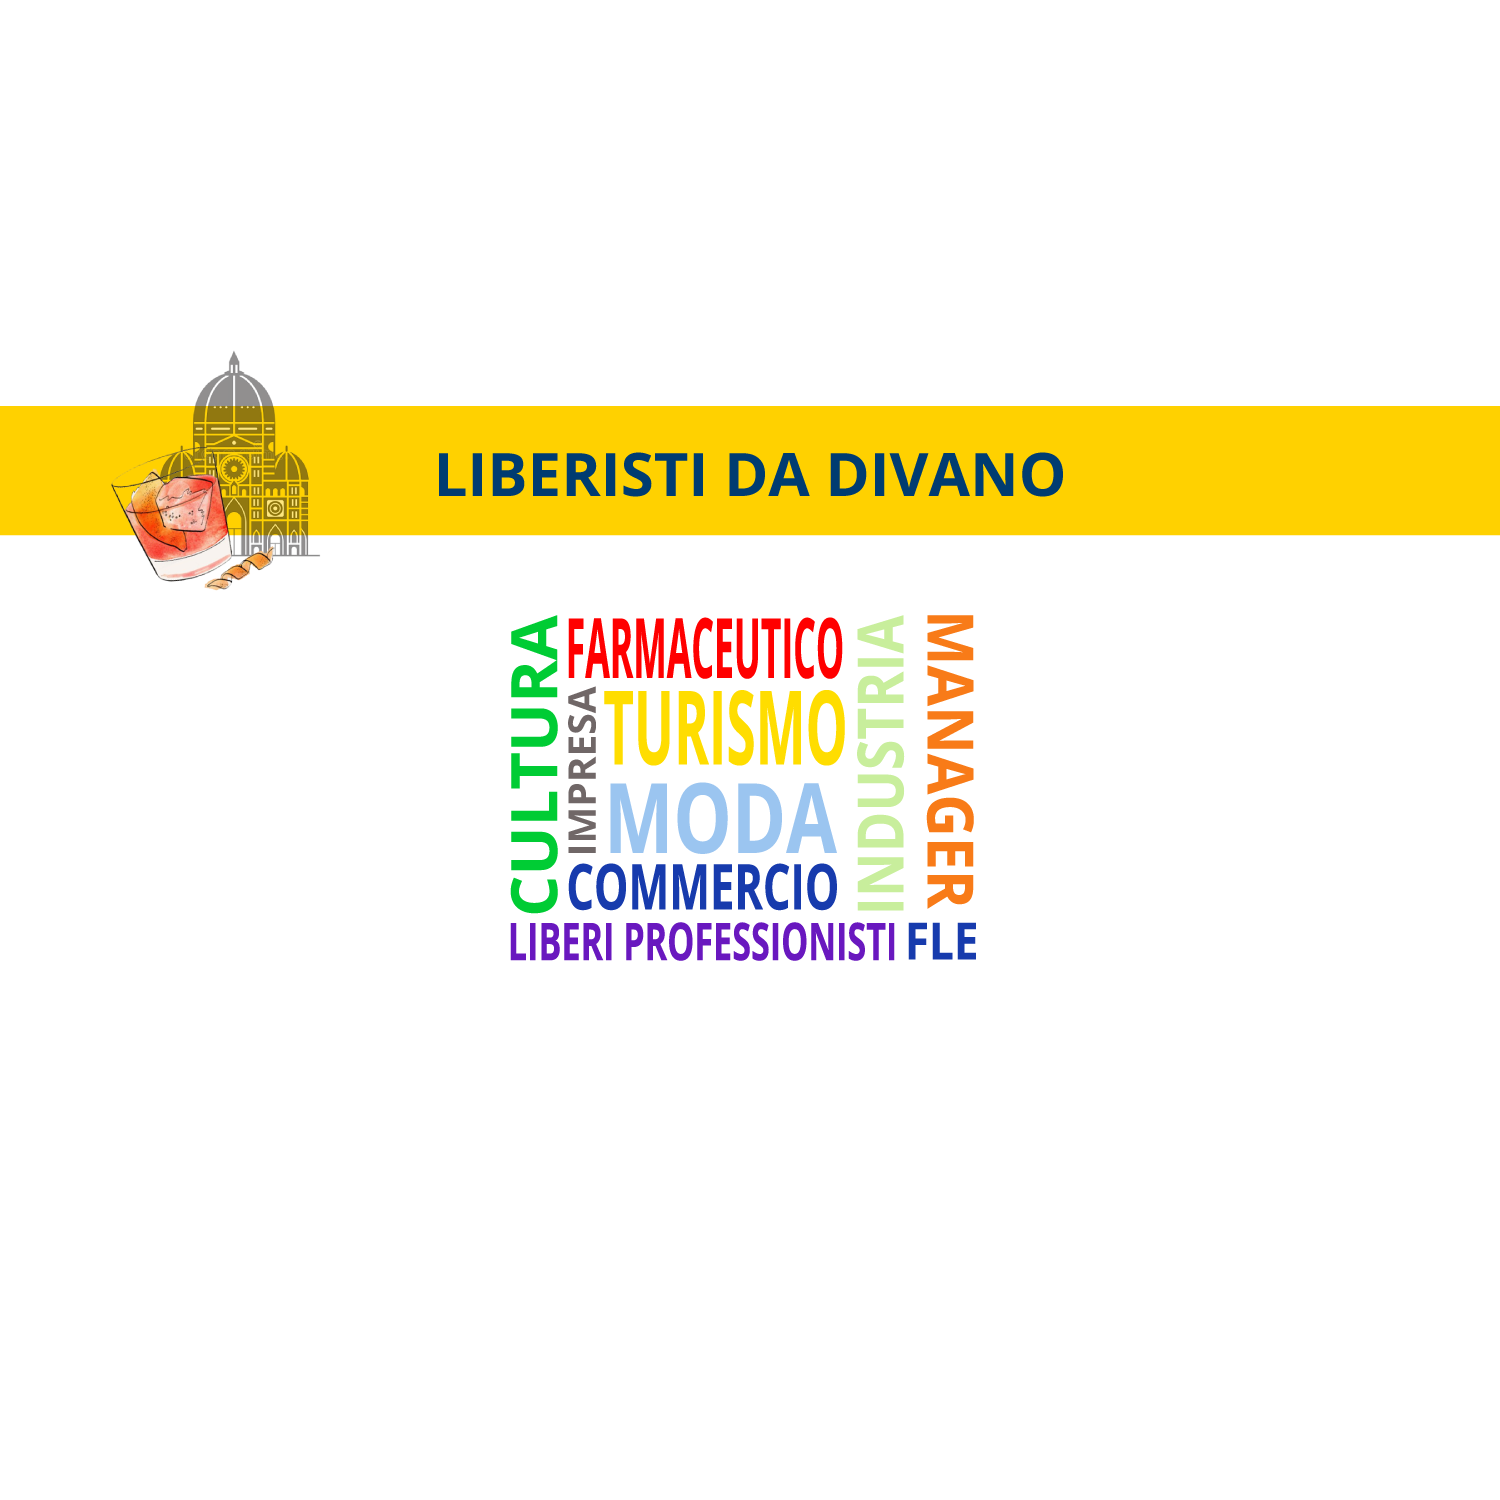 “Liberisti da divano” la presentazione del nostro Presidente all’iniziativa fiorentina della FLE.